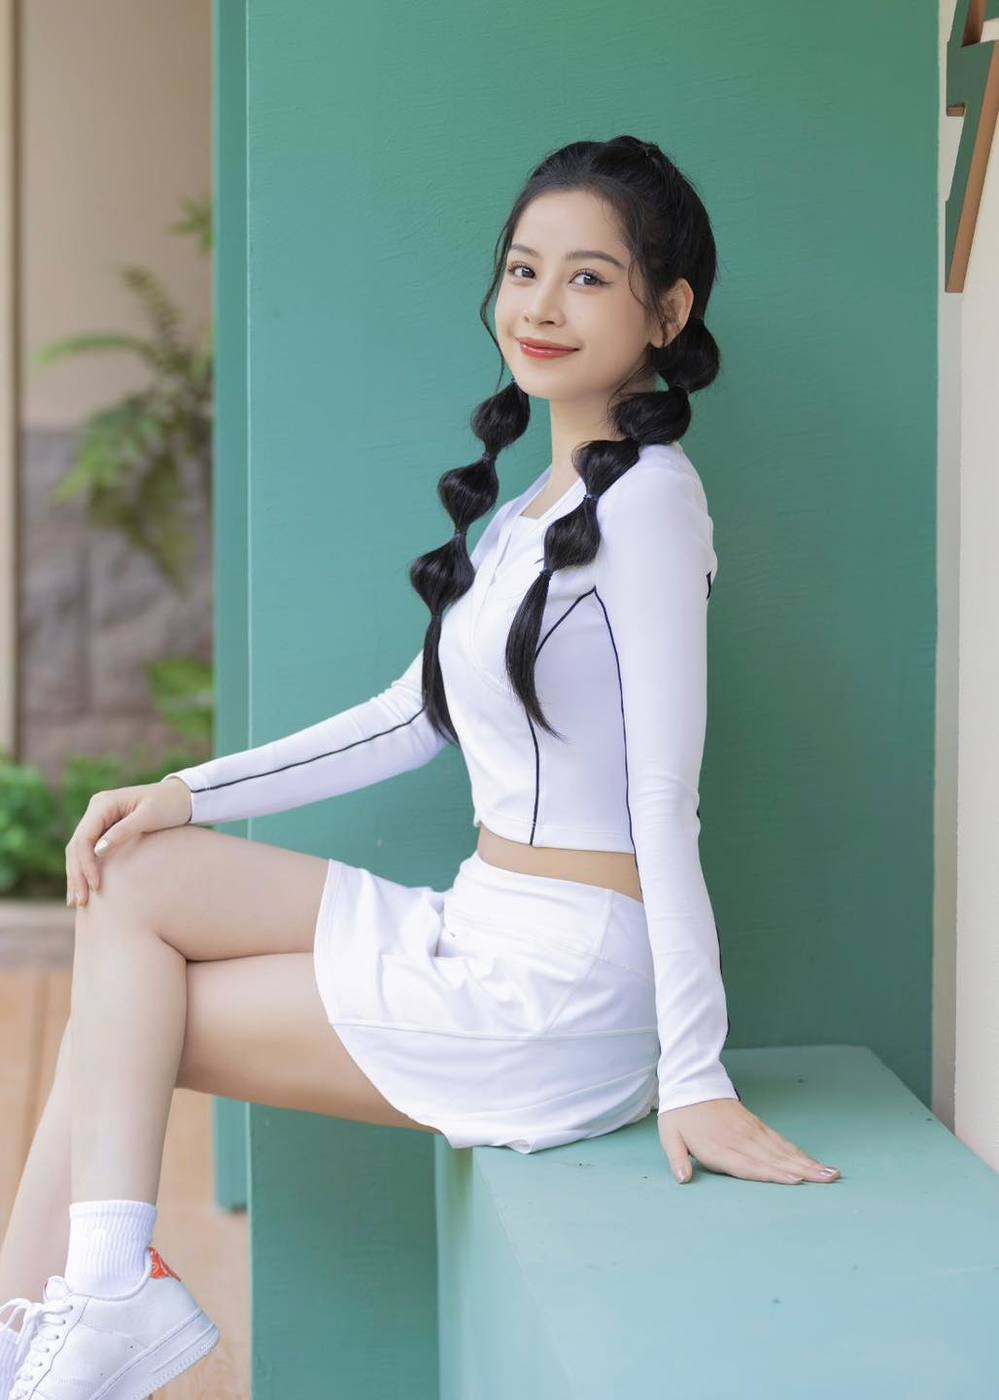  
Chi Pu chủ động đảm nhận vai trò "sứ giả" quảng bá thời trang Việt khi "vươn ra biển lớn". Ảnh: Chi Pu ​